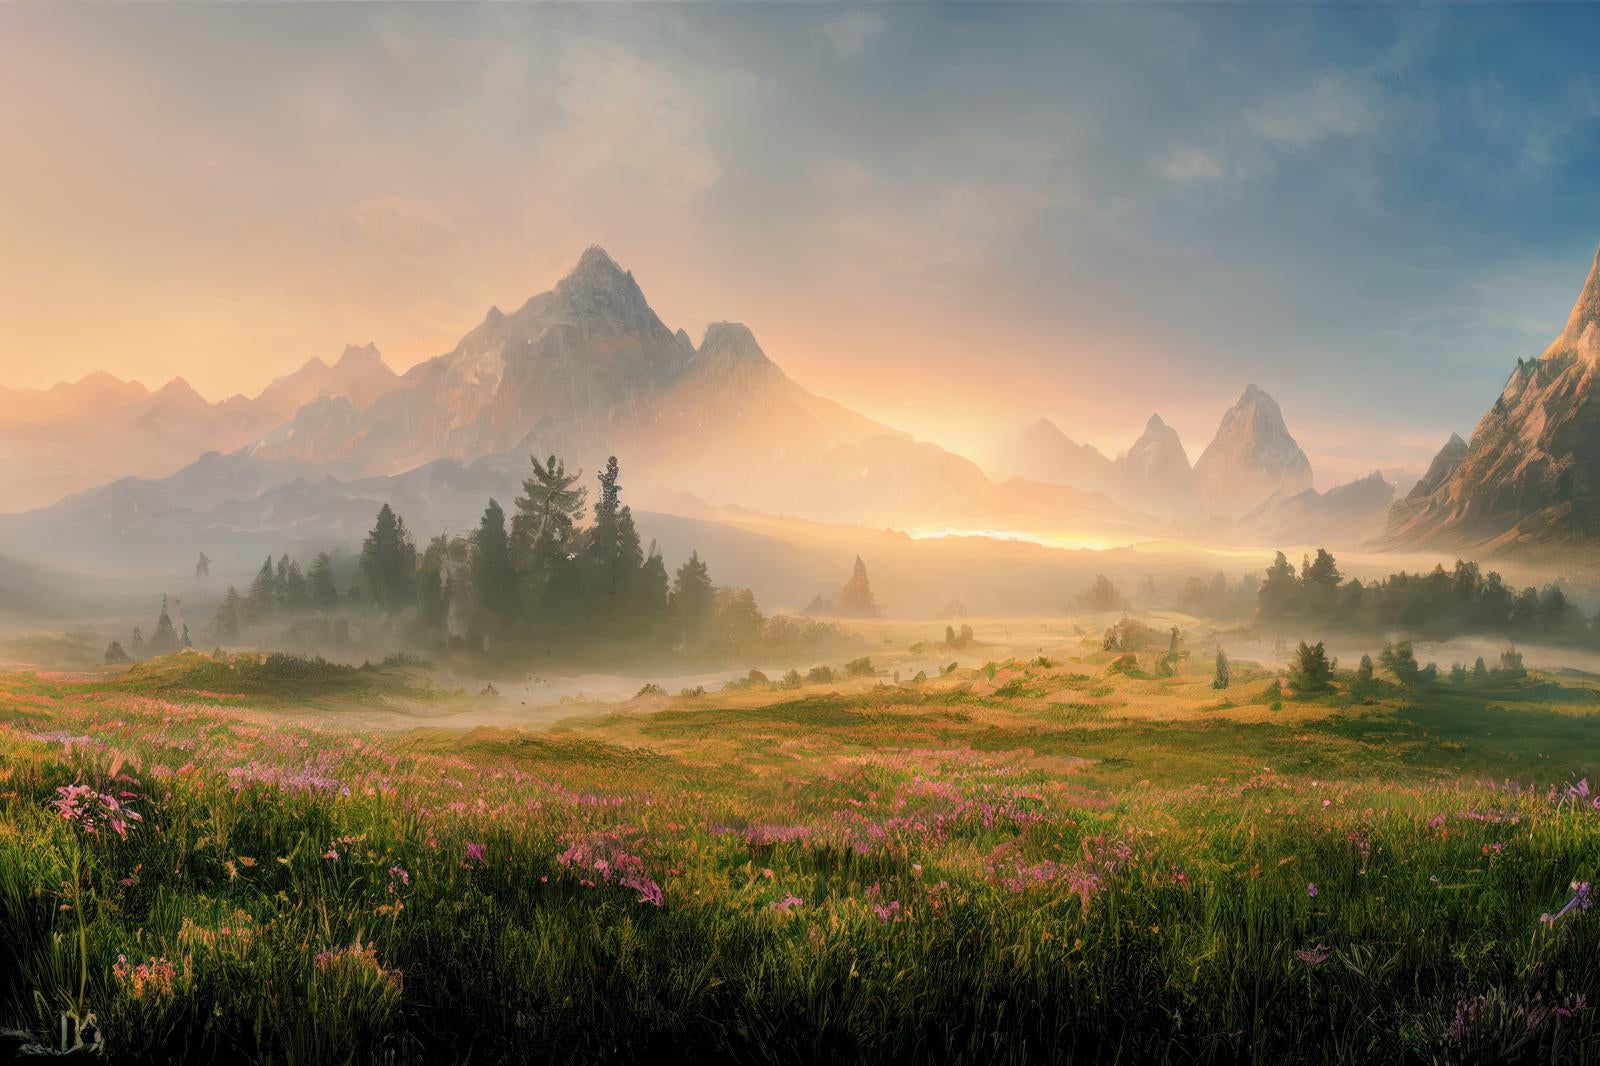 「夜明けの宴 朝靄と高山植物の交響曲」の写真